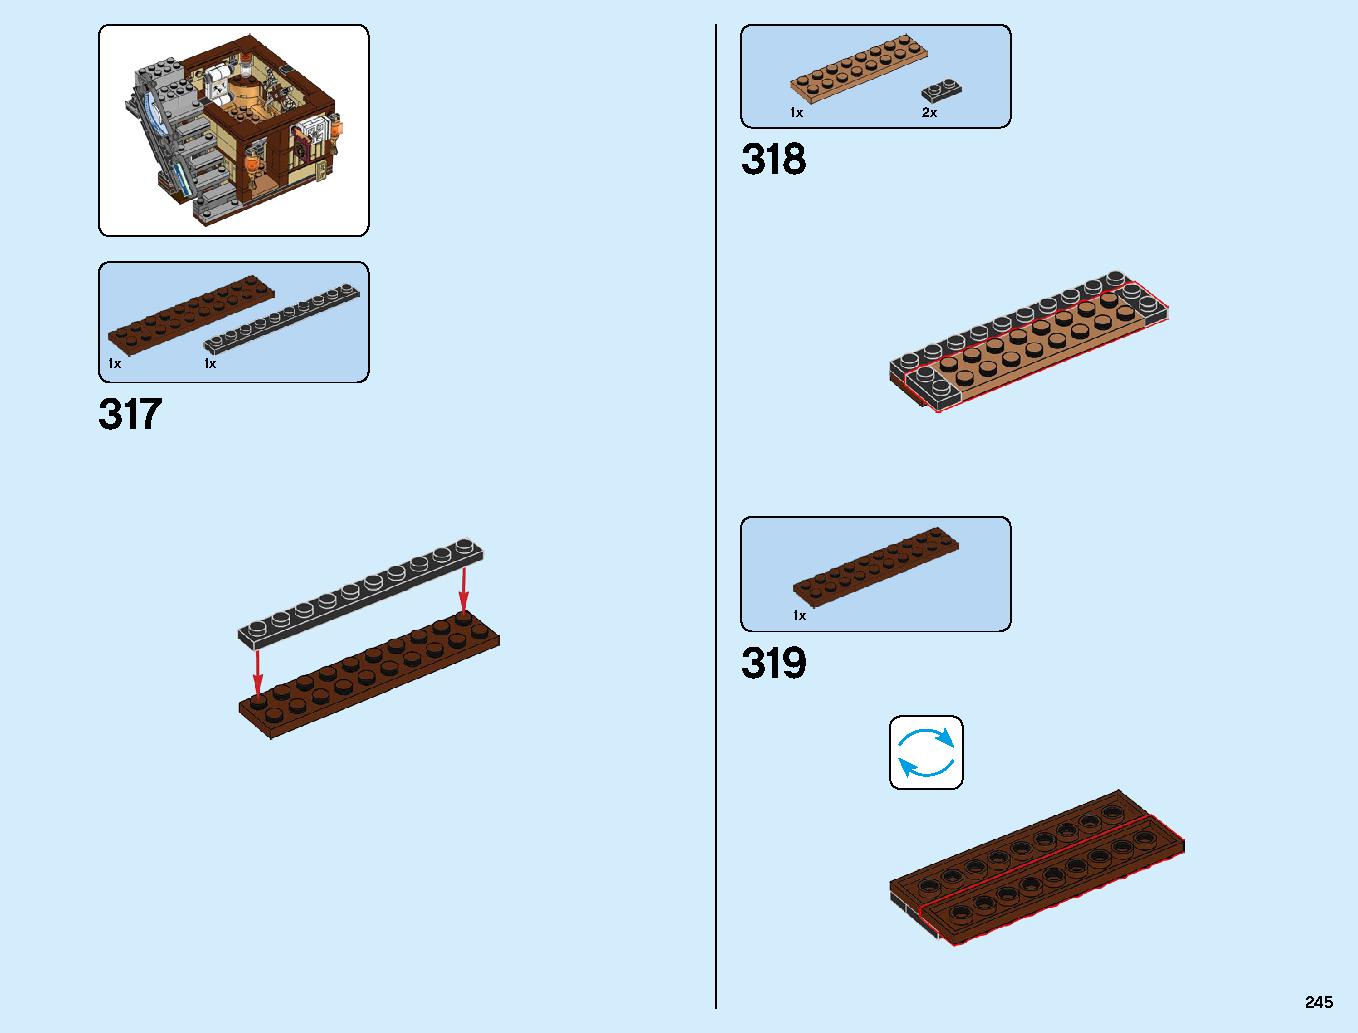 ニンジャゴーシティ・ポートパーク 70657 レゴの商品情報 レゴの説明書・組立方法 245 page